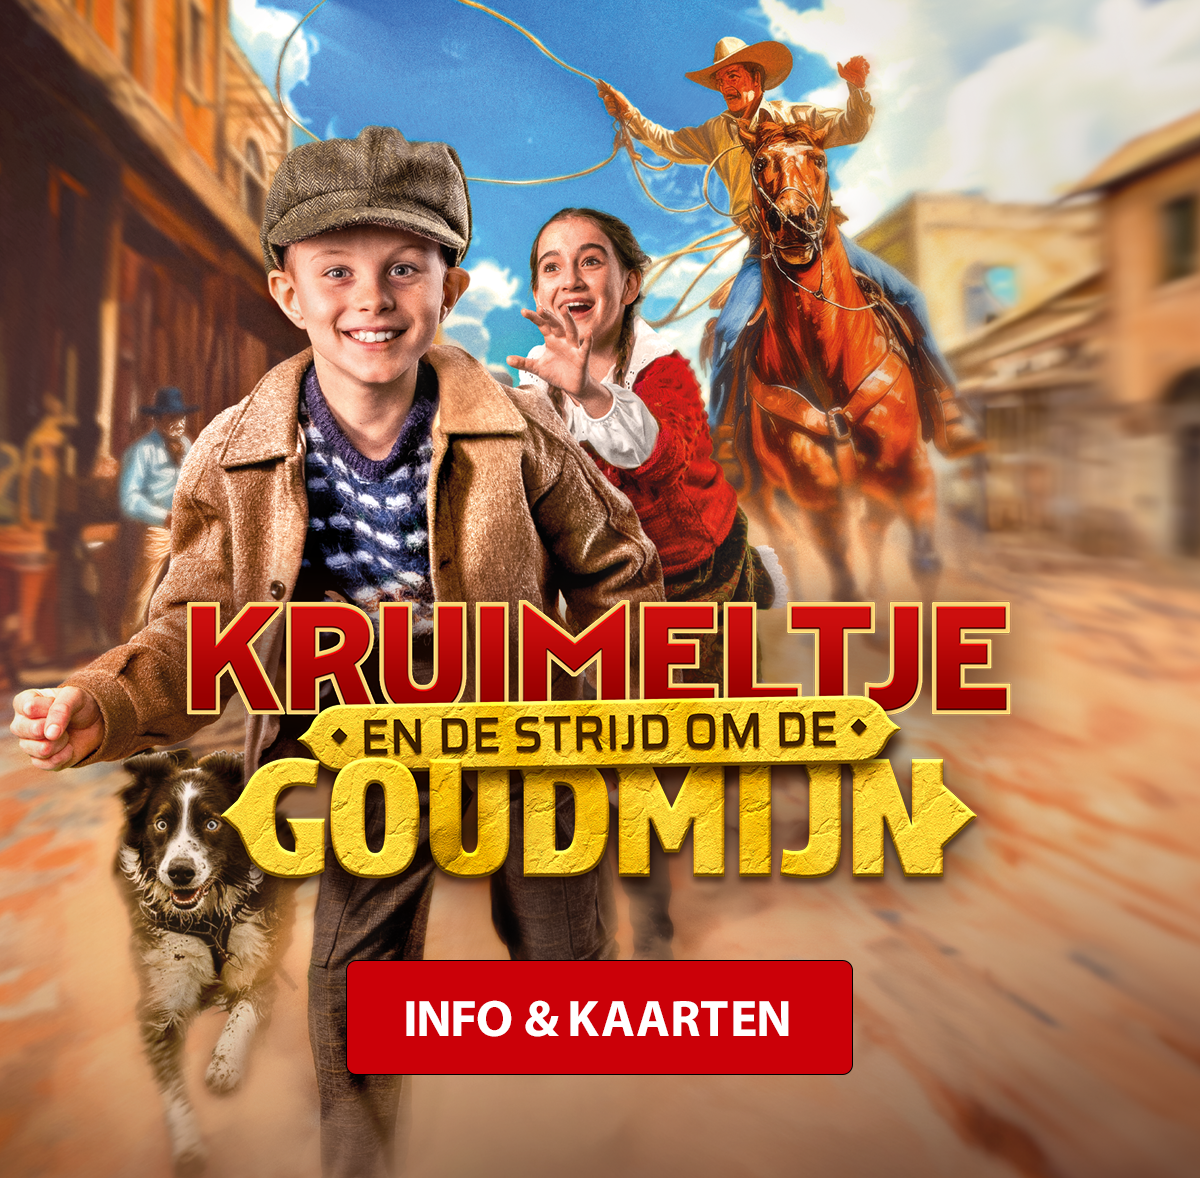 Kruimeltje_homepage_info